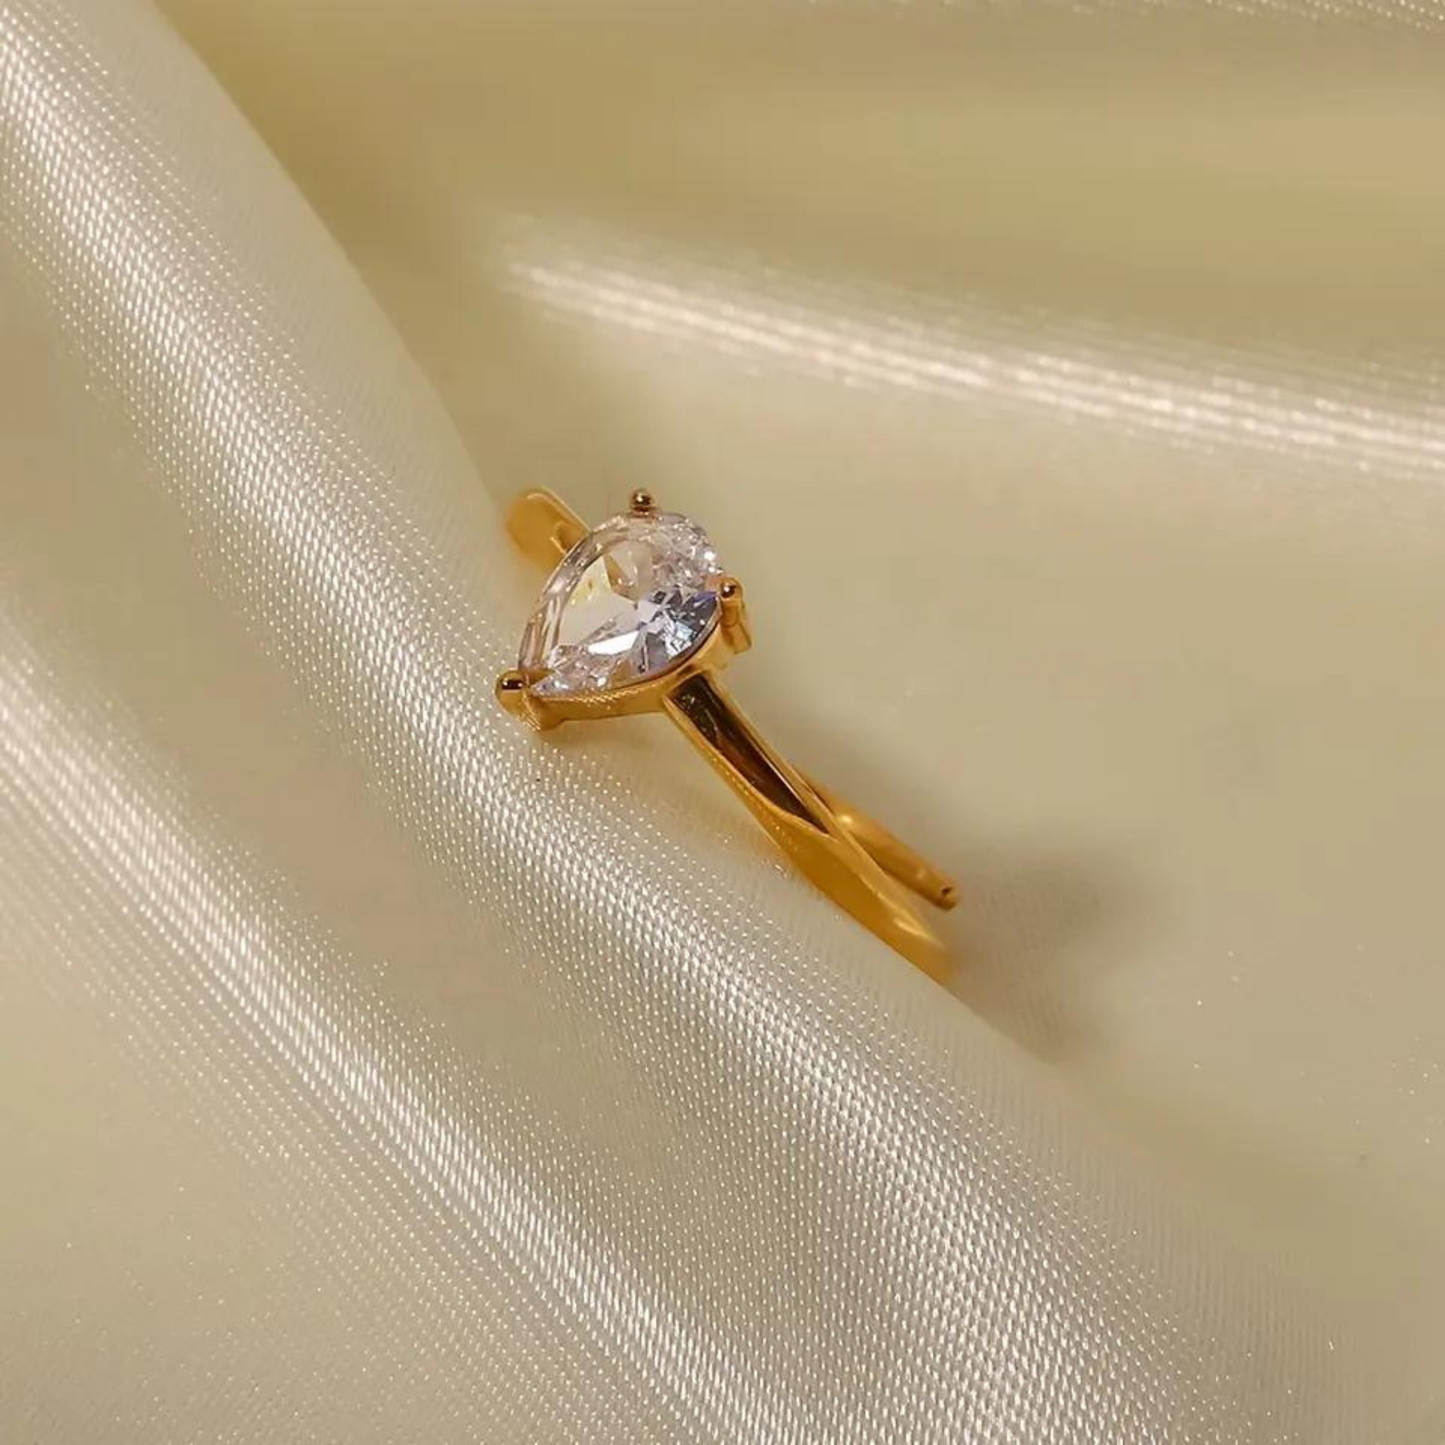 18k Gold Plated Filigree Ring (White)